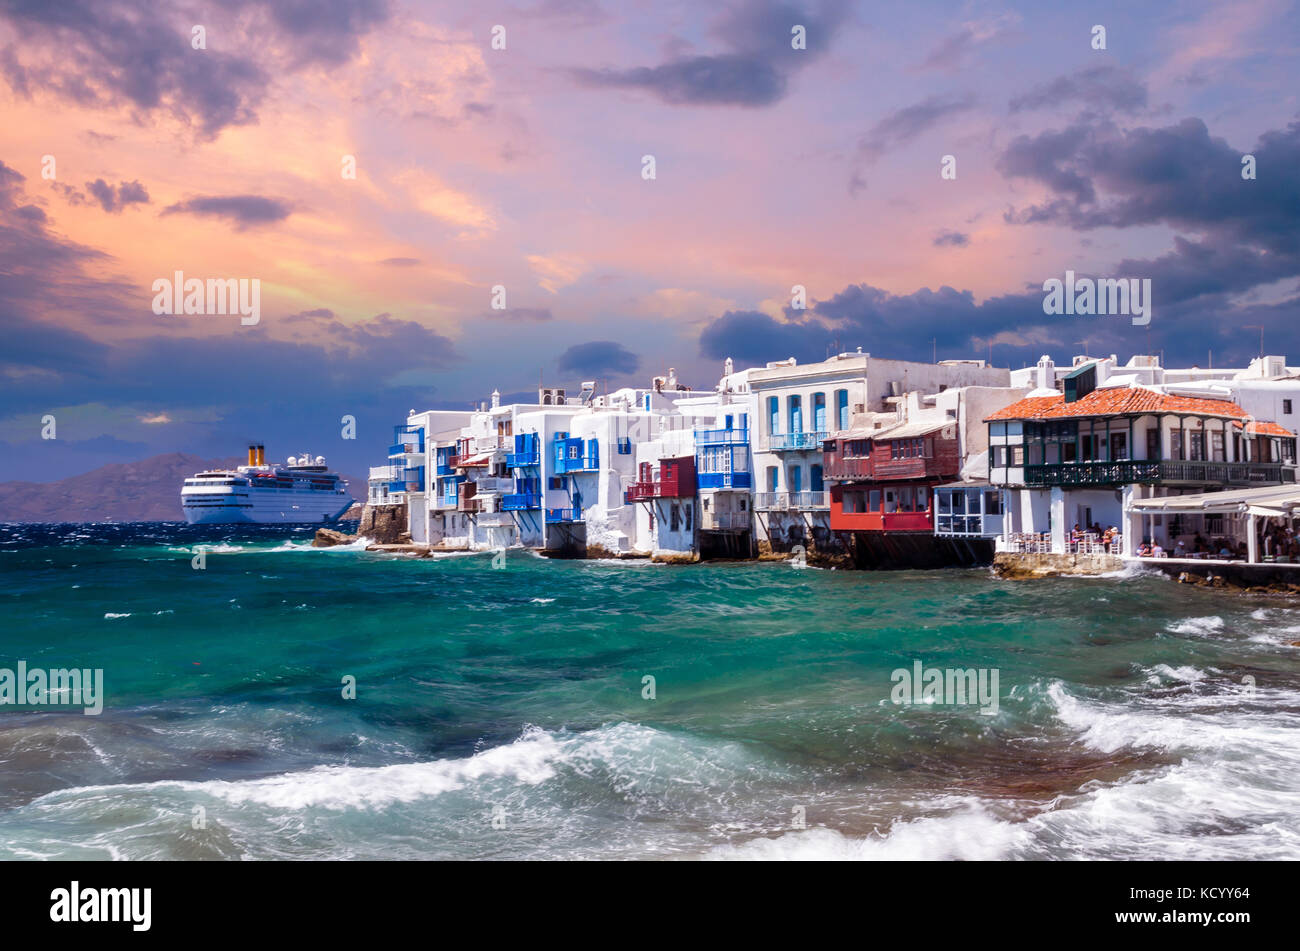 La pequeña Venecia, la isla de Mykonos, Grecia. los coloridos edificios y balcones cerca del mar y de un barco de crucero blanco grande. Foto de stock